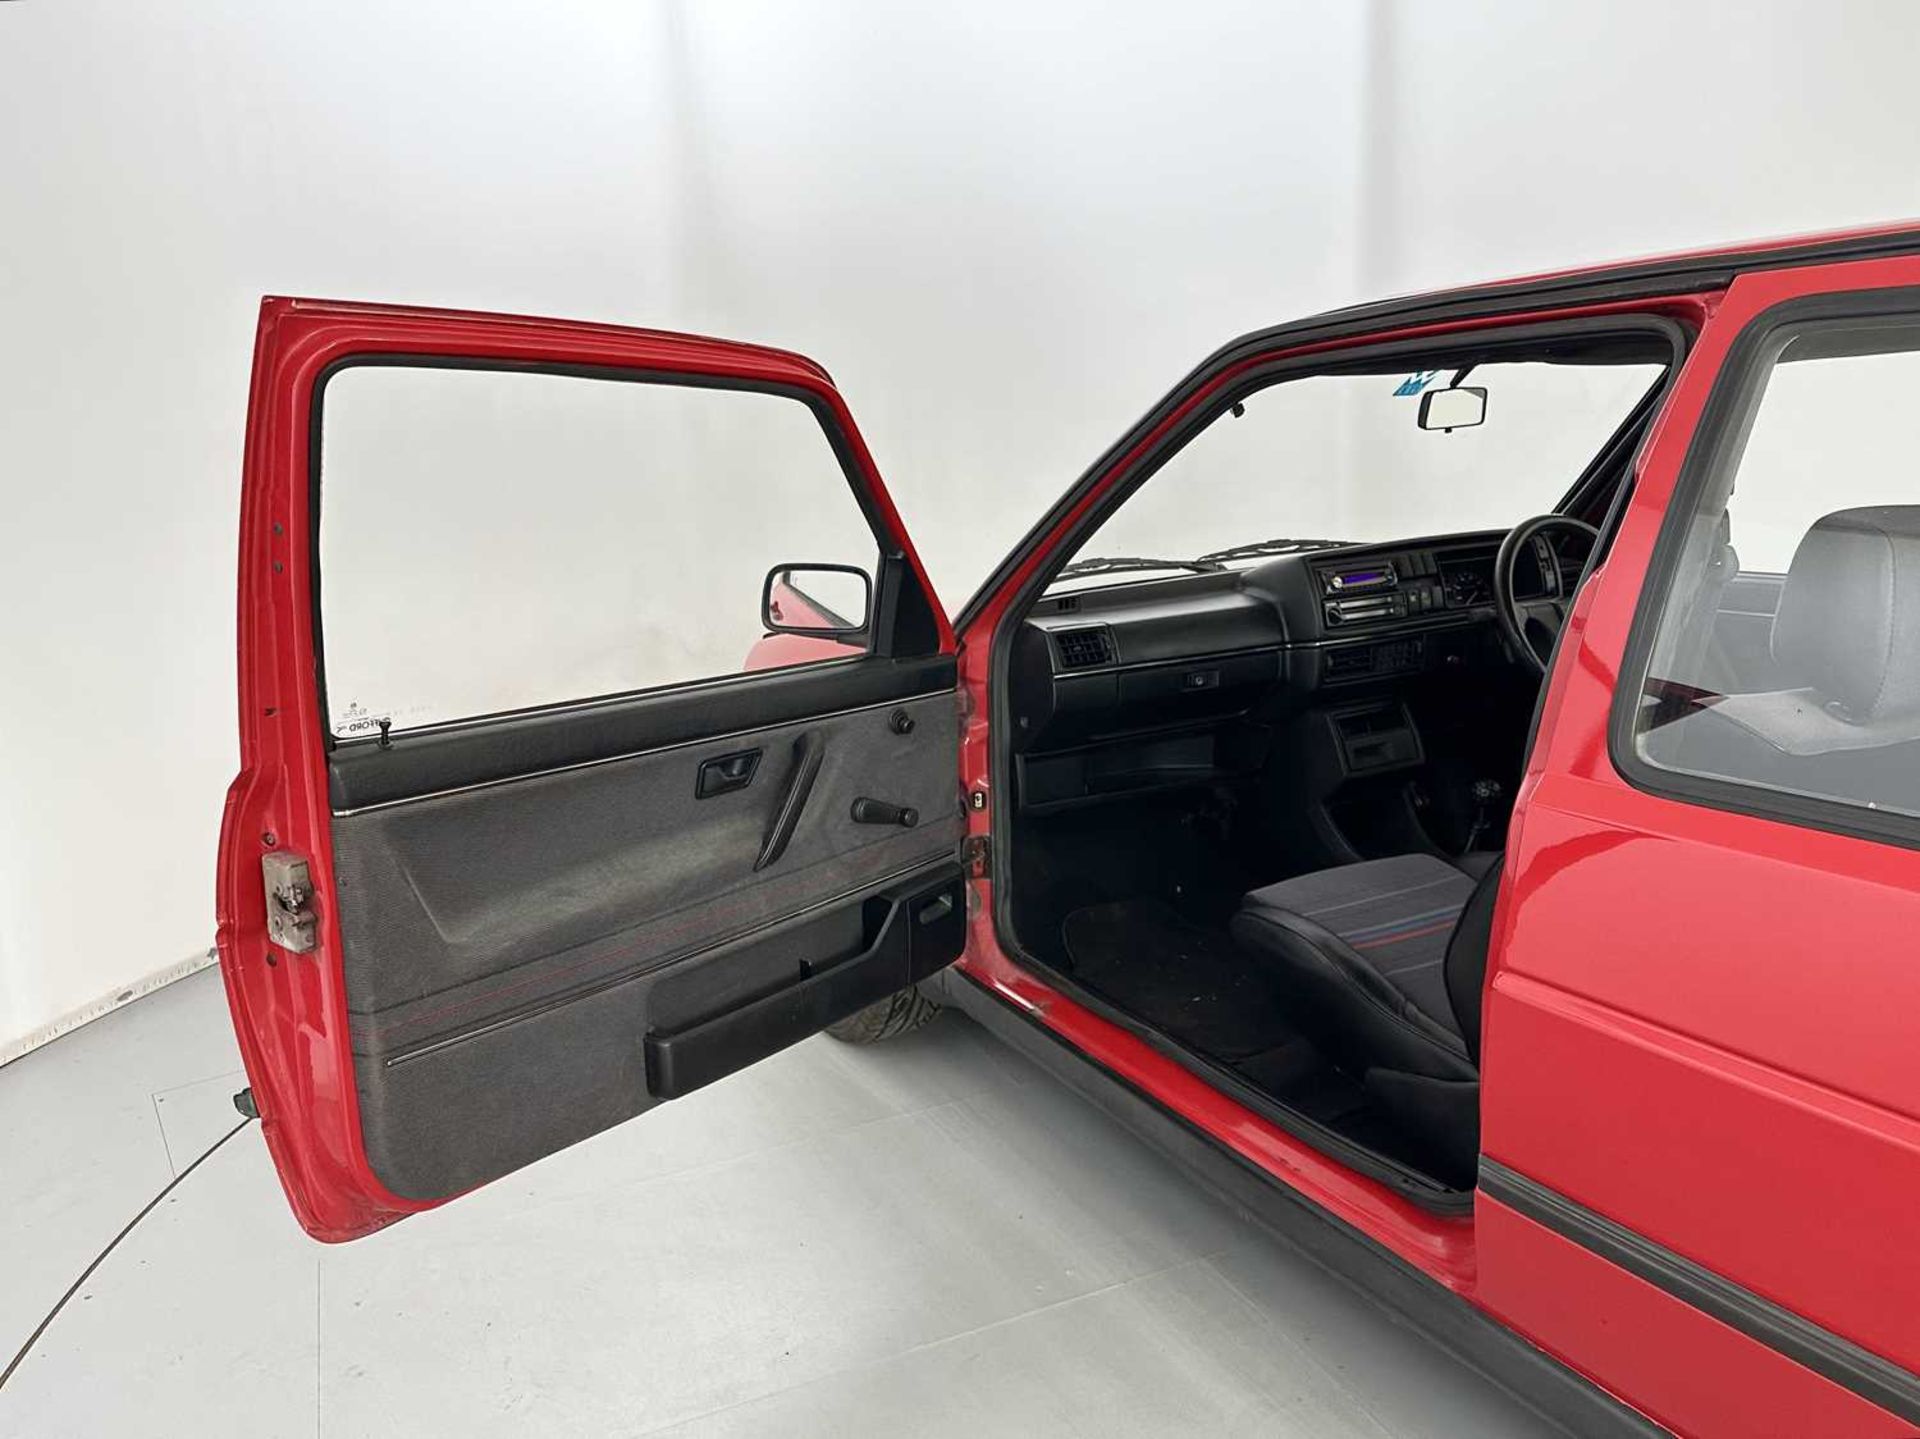 1990 Volkswagen Golf GTI - Image 21 of 30